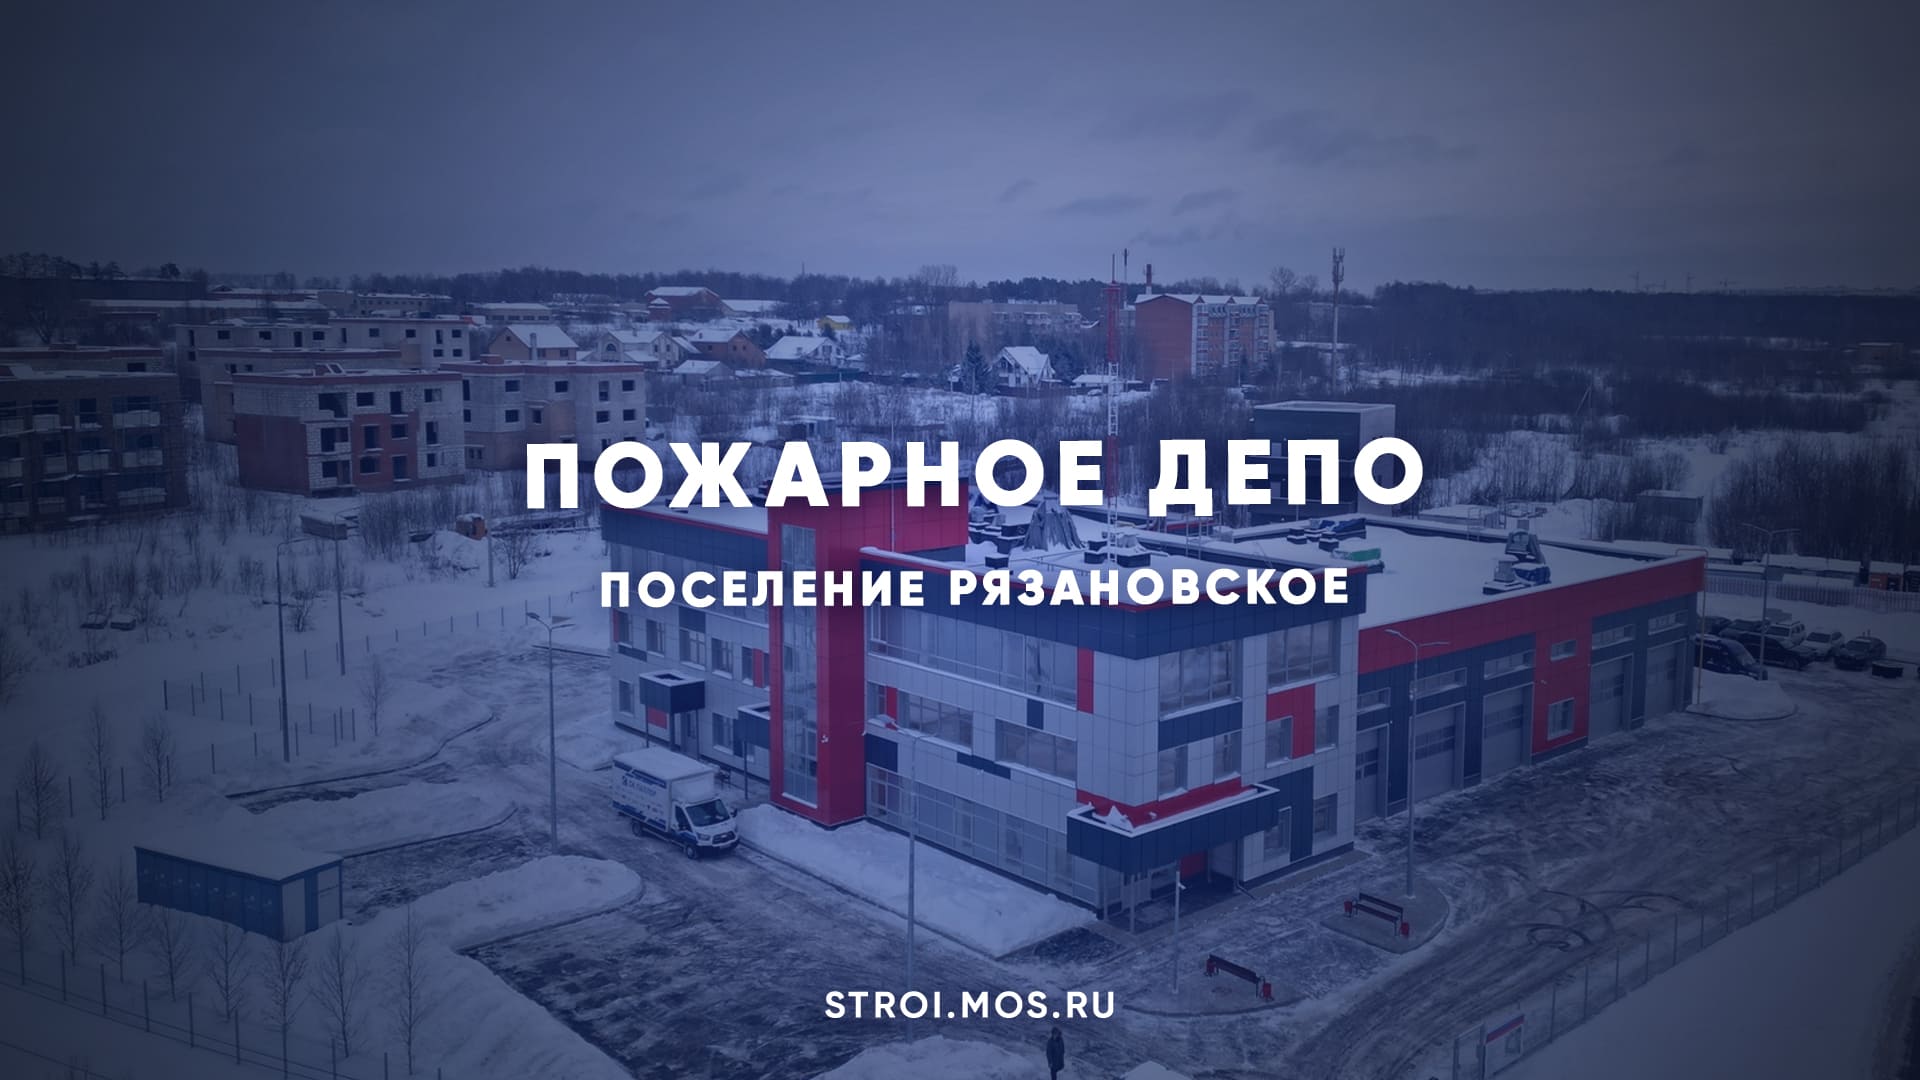 Пожарное депо появится в поселении Рязановское